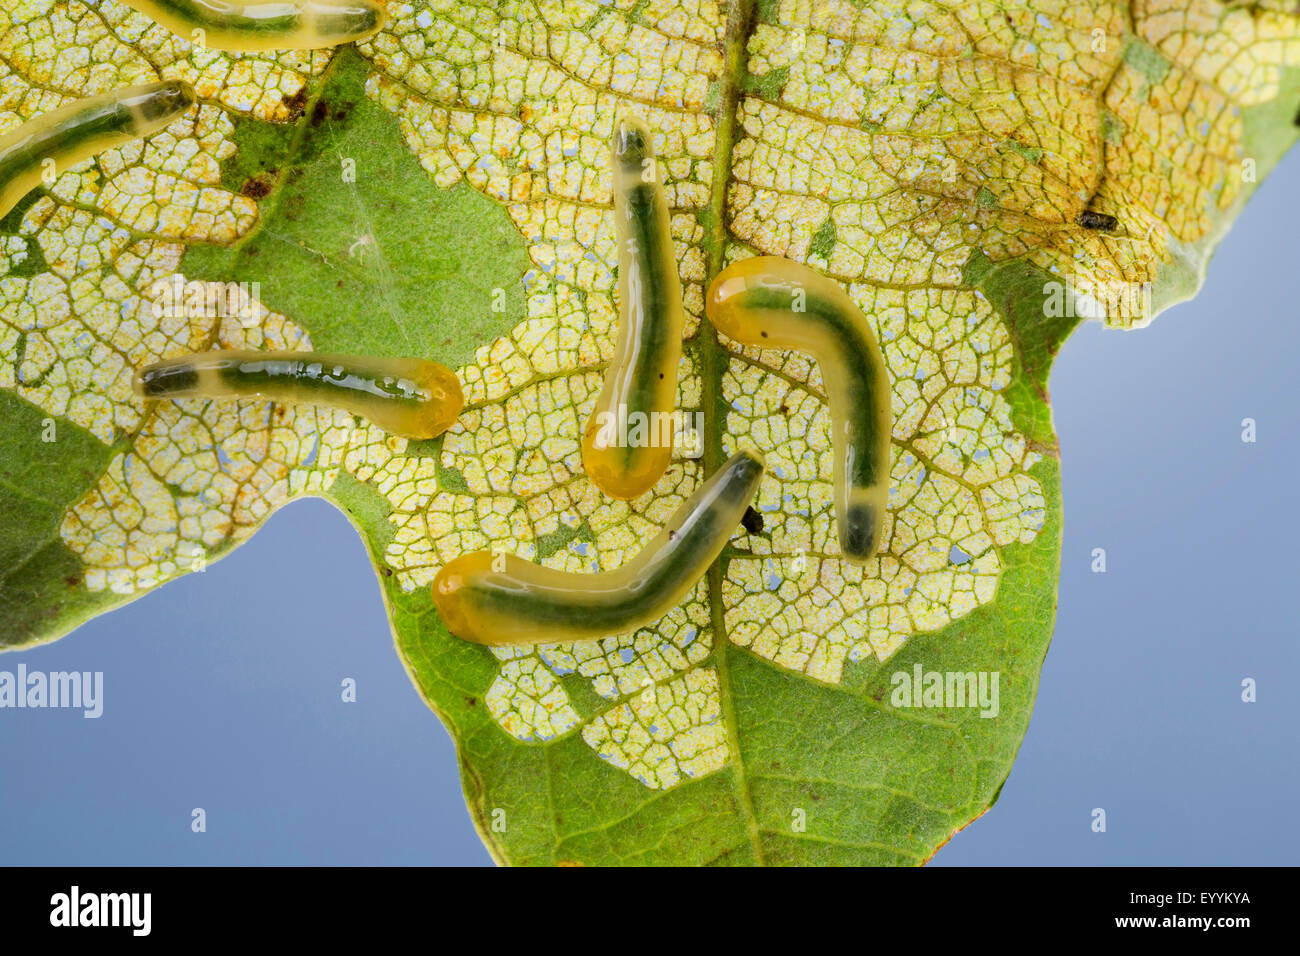 La tenthrède limace chêne, chêne (Caliroa annulipes slugworm Eriocampoides annulipes,), des larves qui s'alimentent à une feuille de chêne, Allemagne Banque D'Images